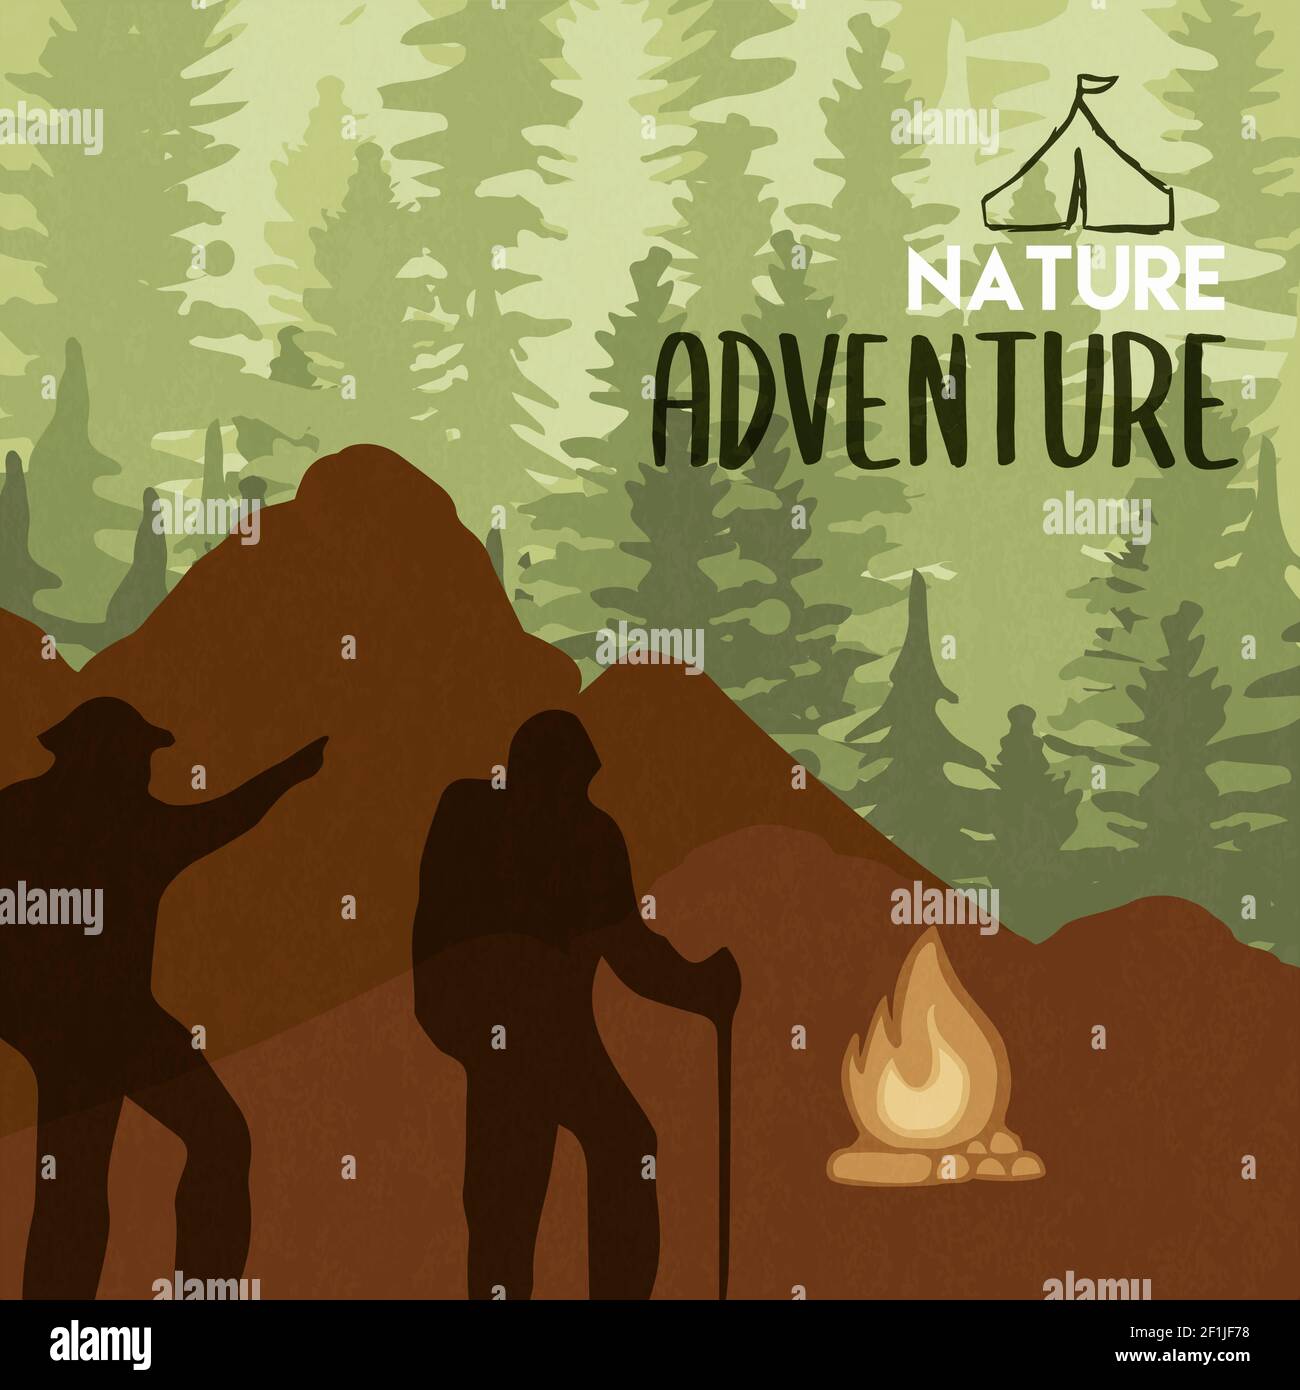 Natur Abenteuer Illustration von Menschen und Camping Lagerfeuer in grünen Baum Waldlandschaft. Umweltfreundliches Tourismus- oder Outdoor-Sportkonzept. Stock Vektor